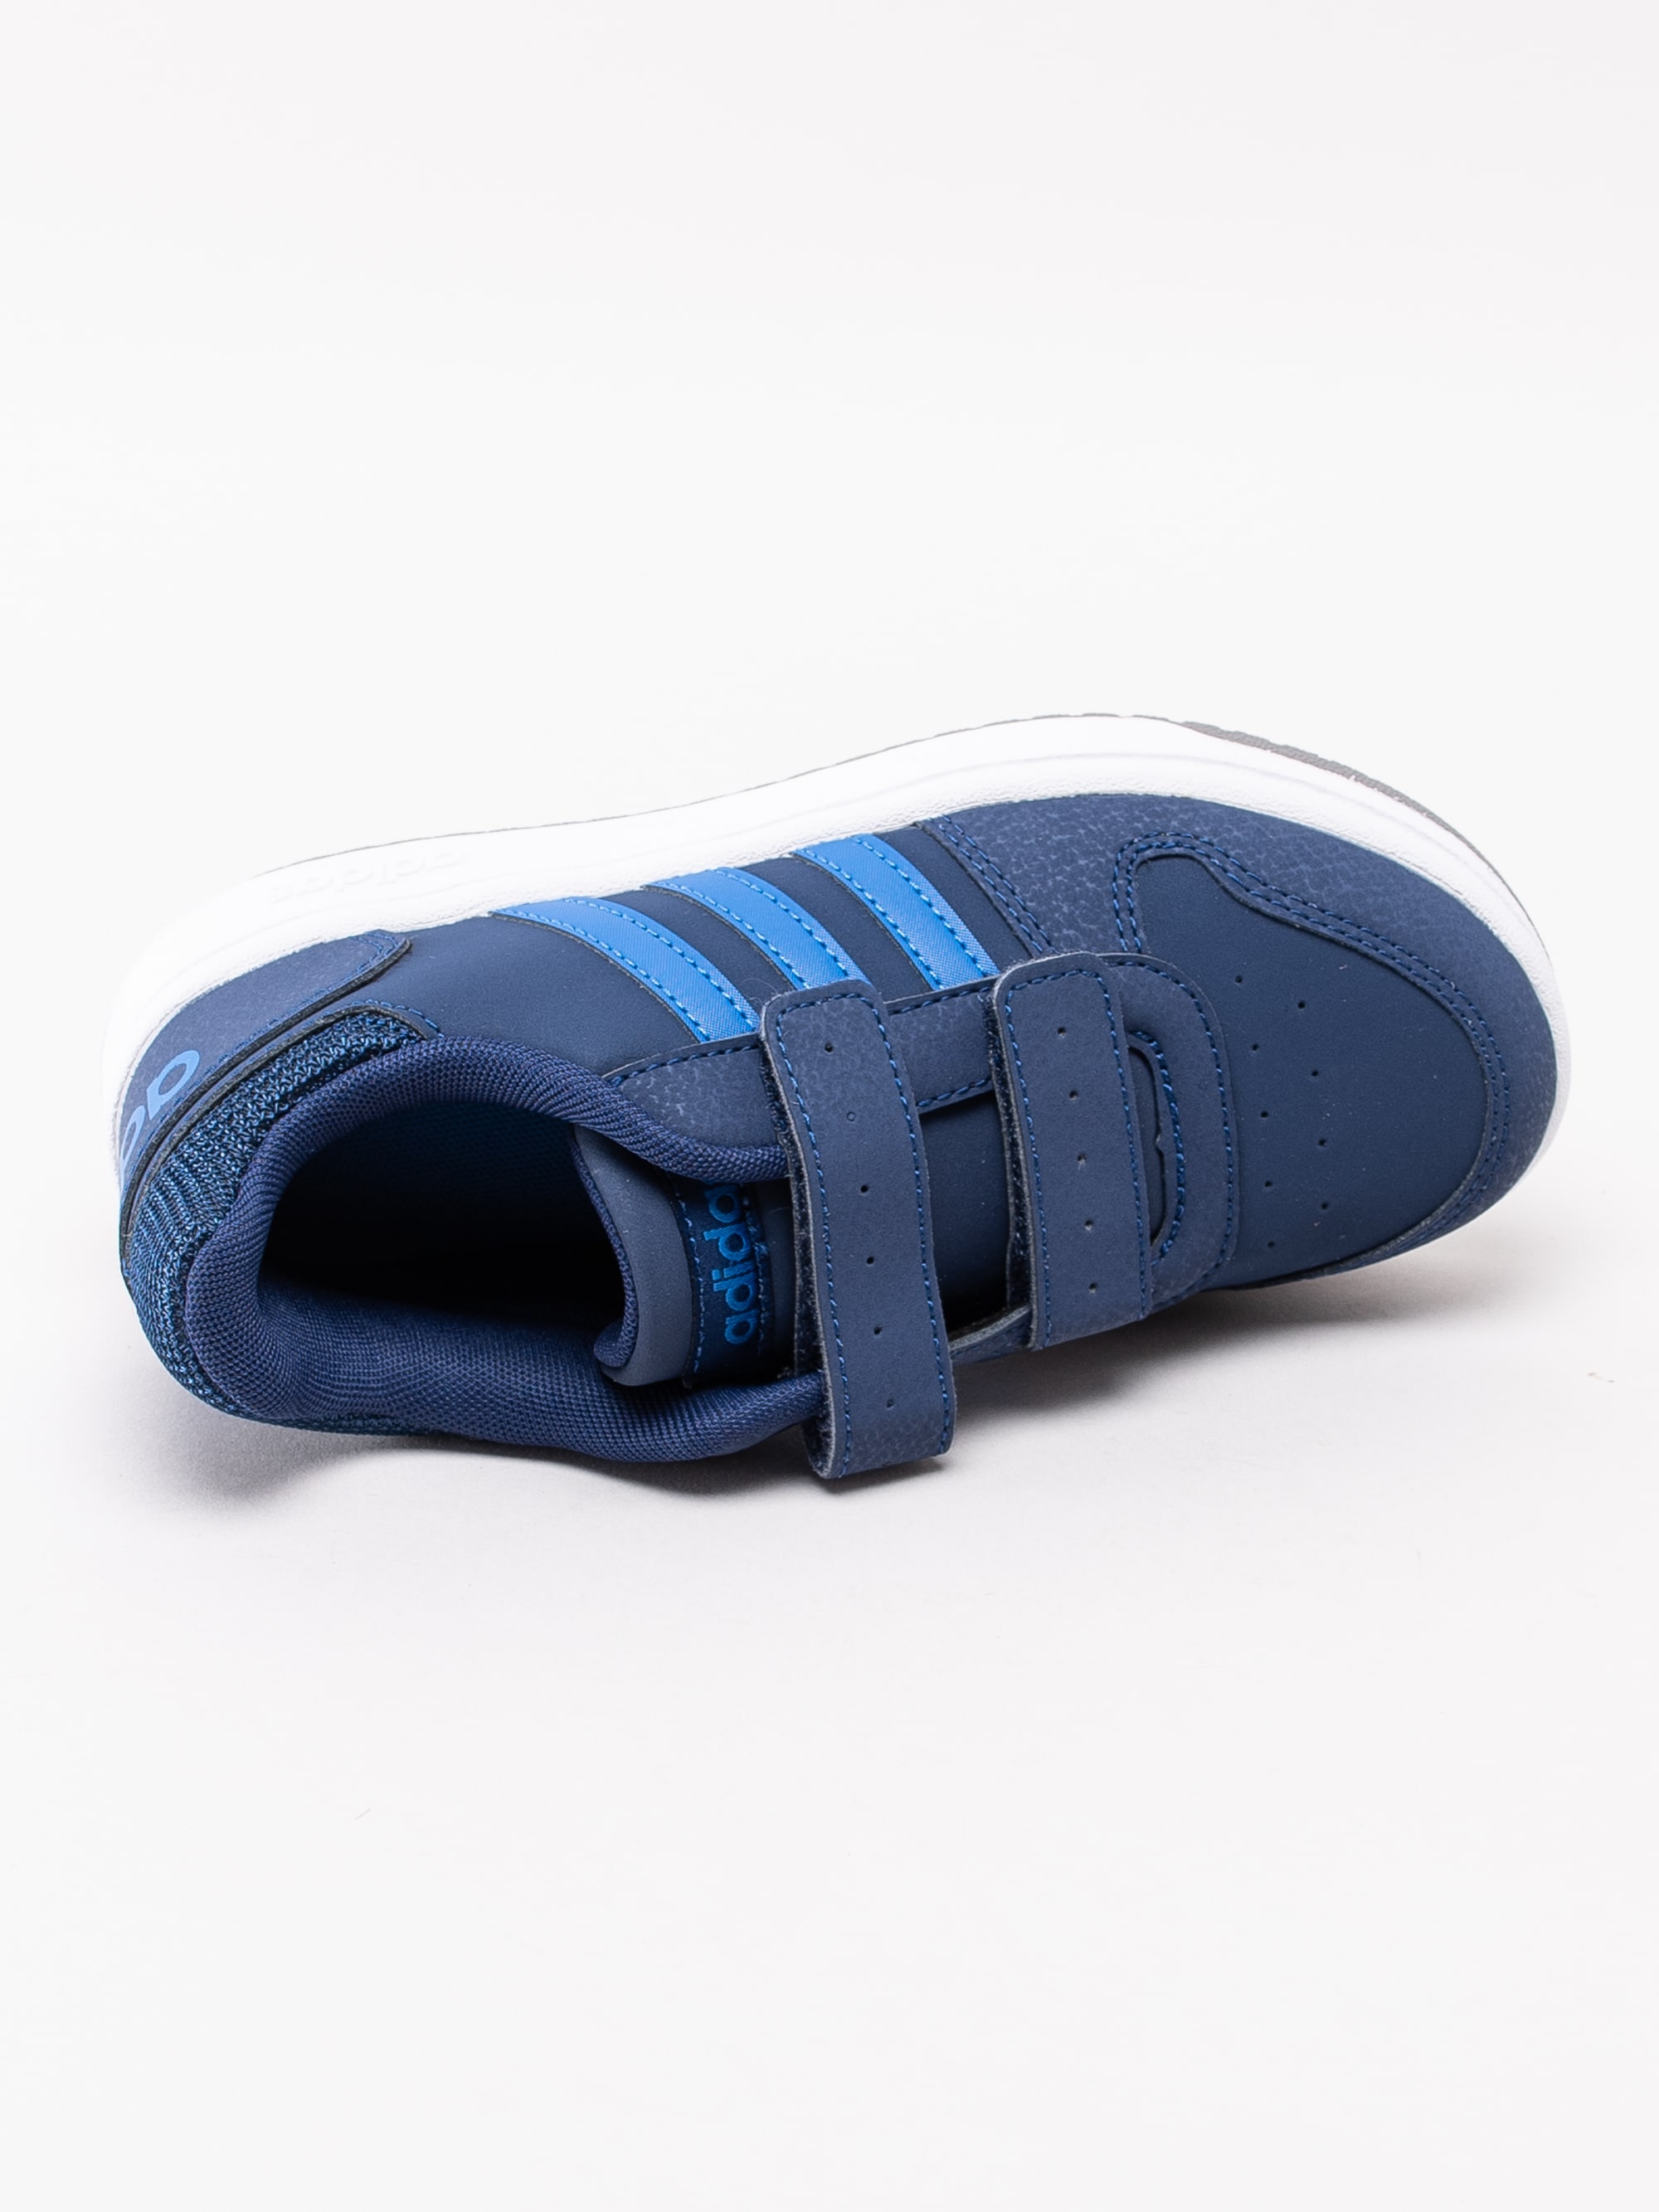 56193011 Adidas Hoops 2.0 Cmf C EE9000 mörkblå sneakers med kardborre-4